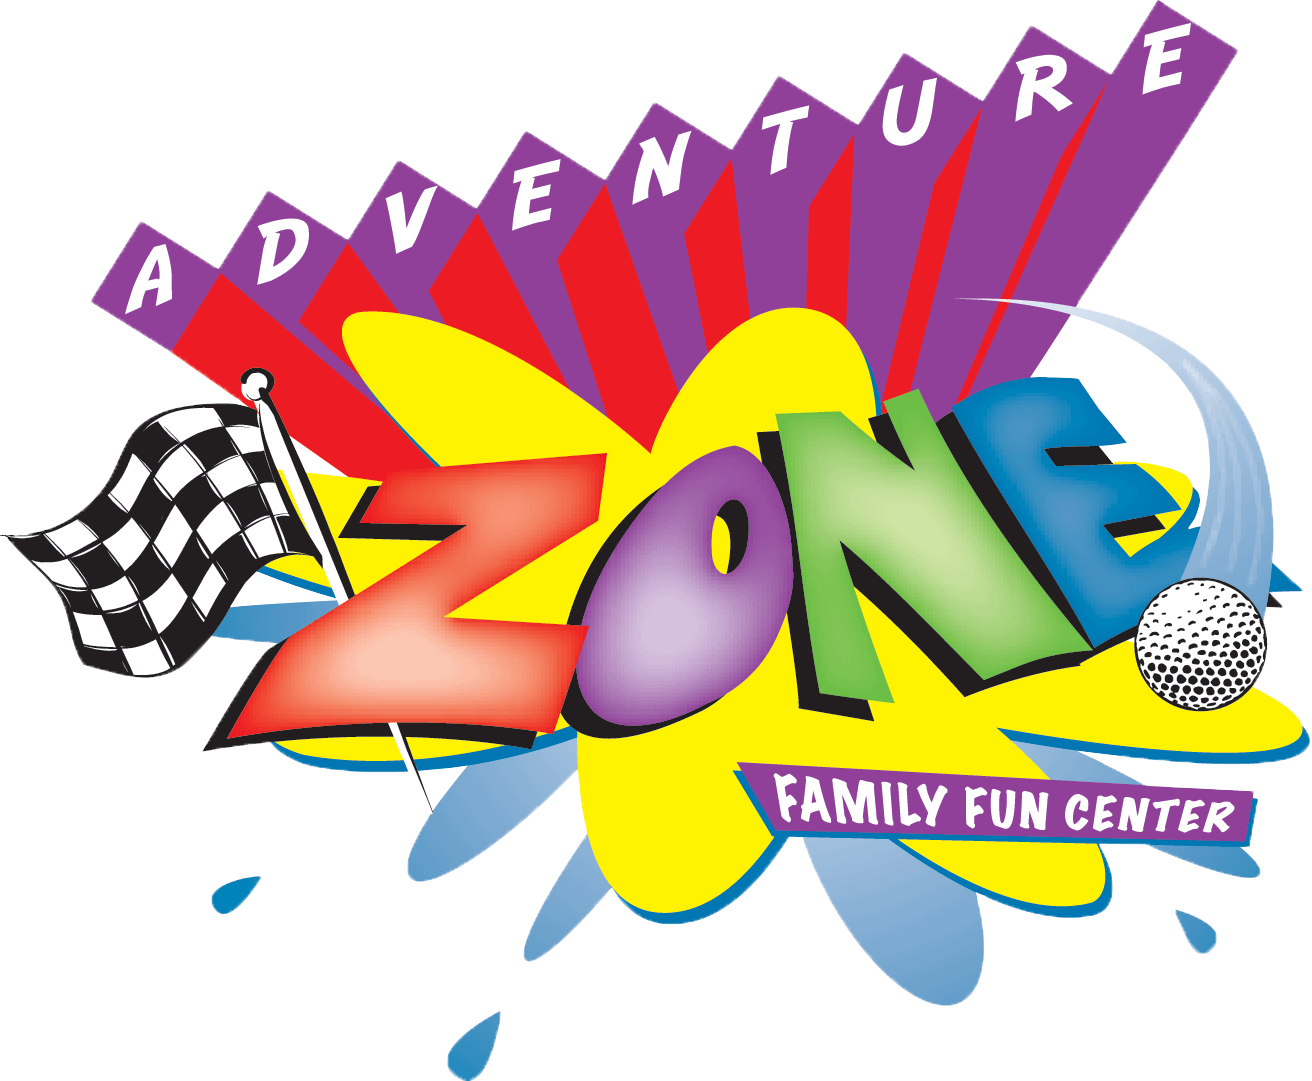 Adventure Zone Family Fun Center